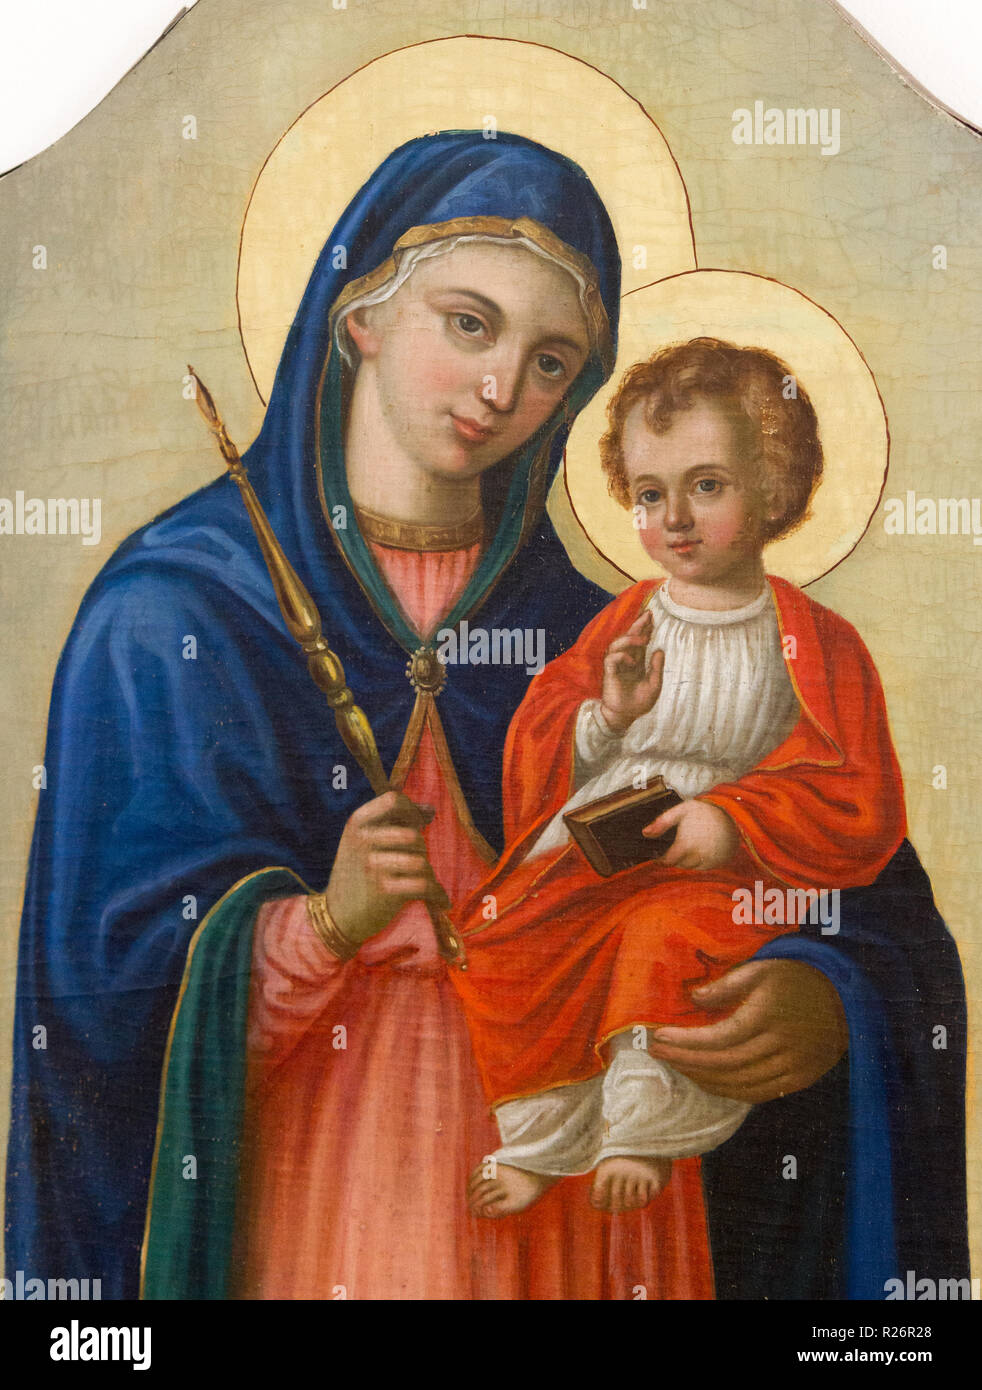 Eine Ikone der Jungfrau und Gottesmutter Hodegetria (Der Weg). Von einer Kirche in Borov, Slowakei. Um 1873. Derzeit in einem Museum in Bardejov. Stockfoto